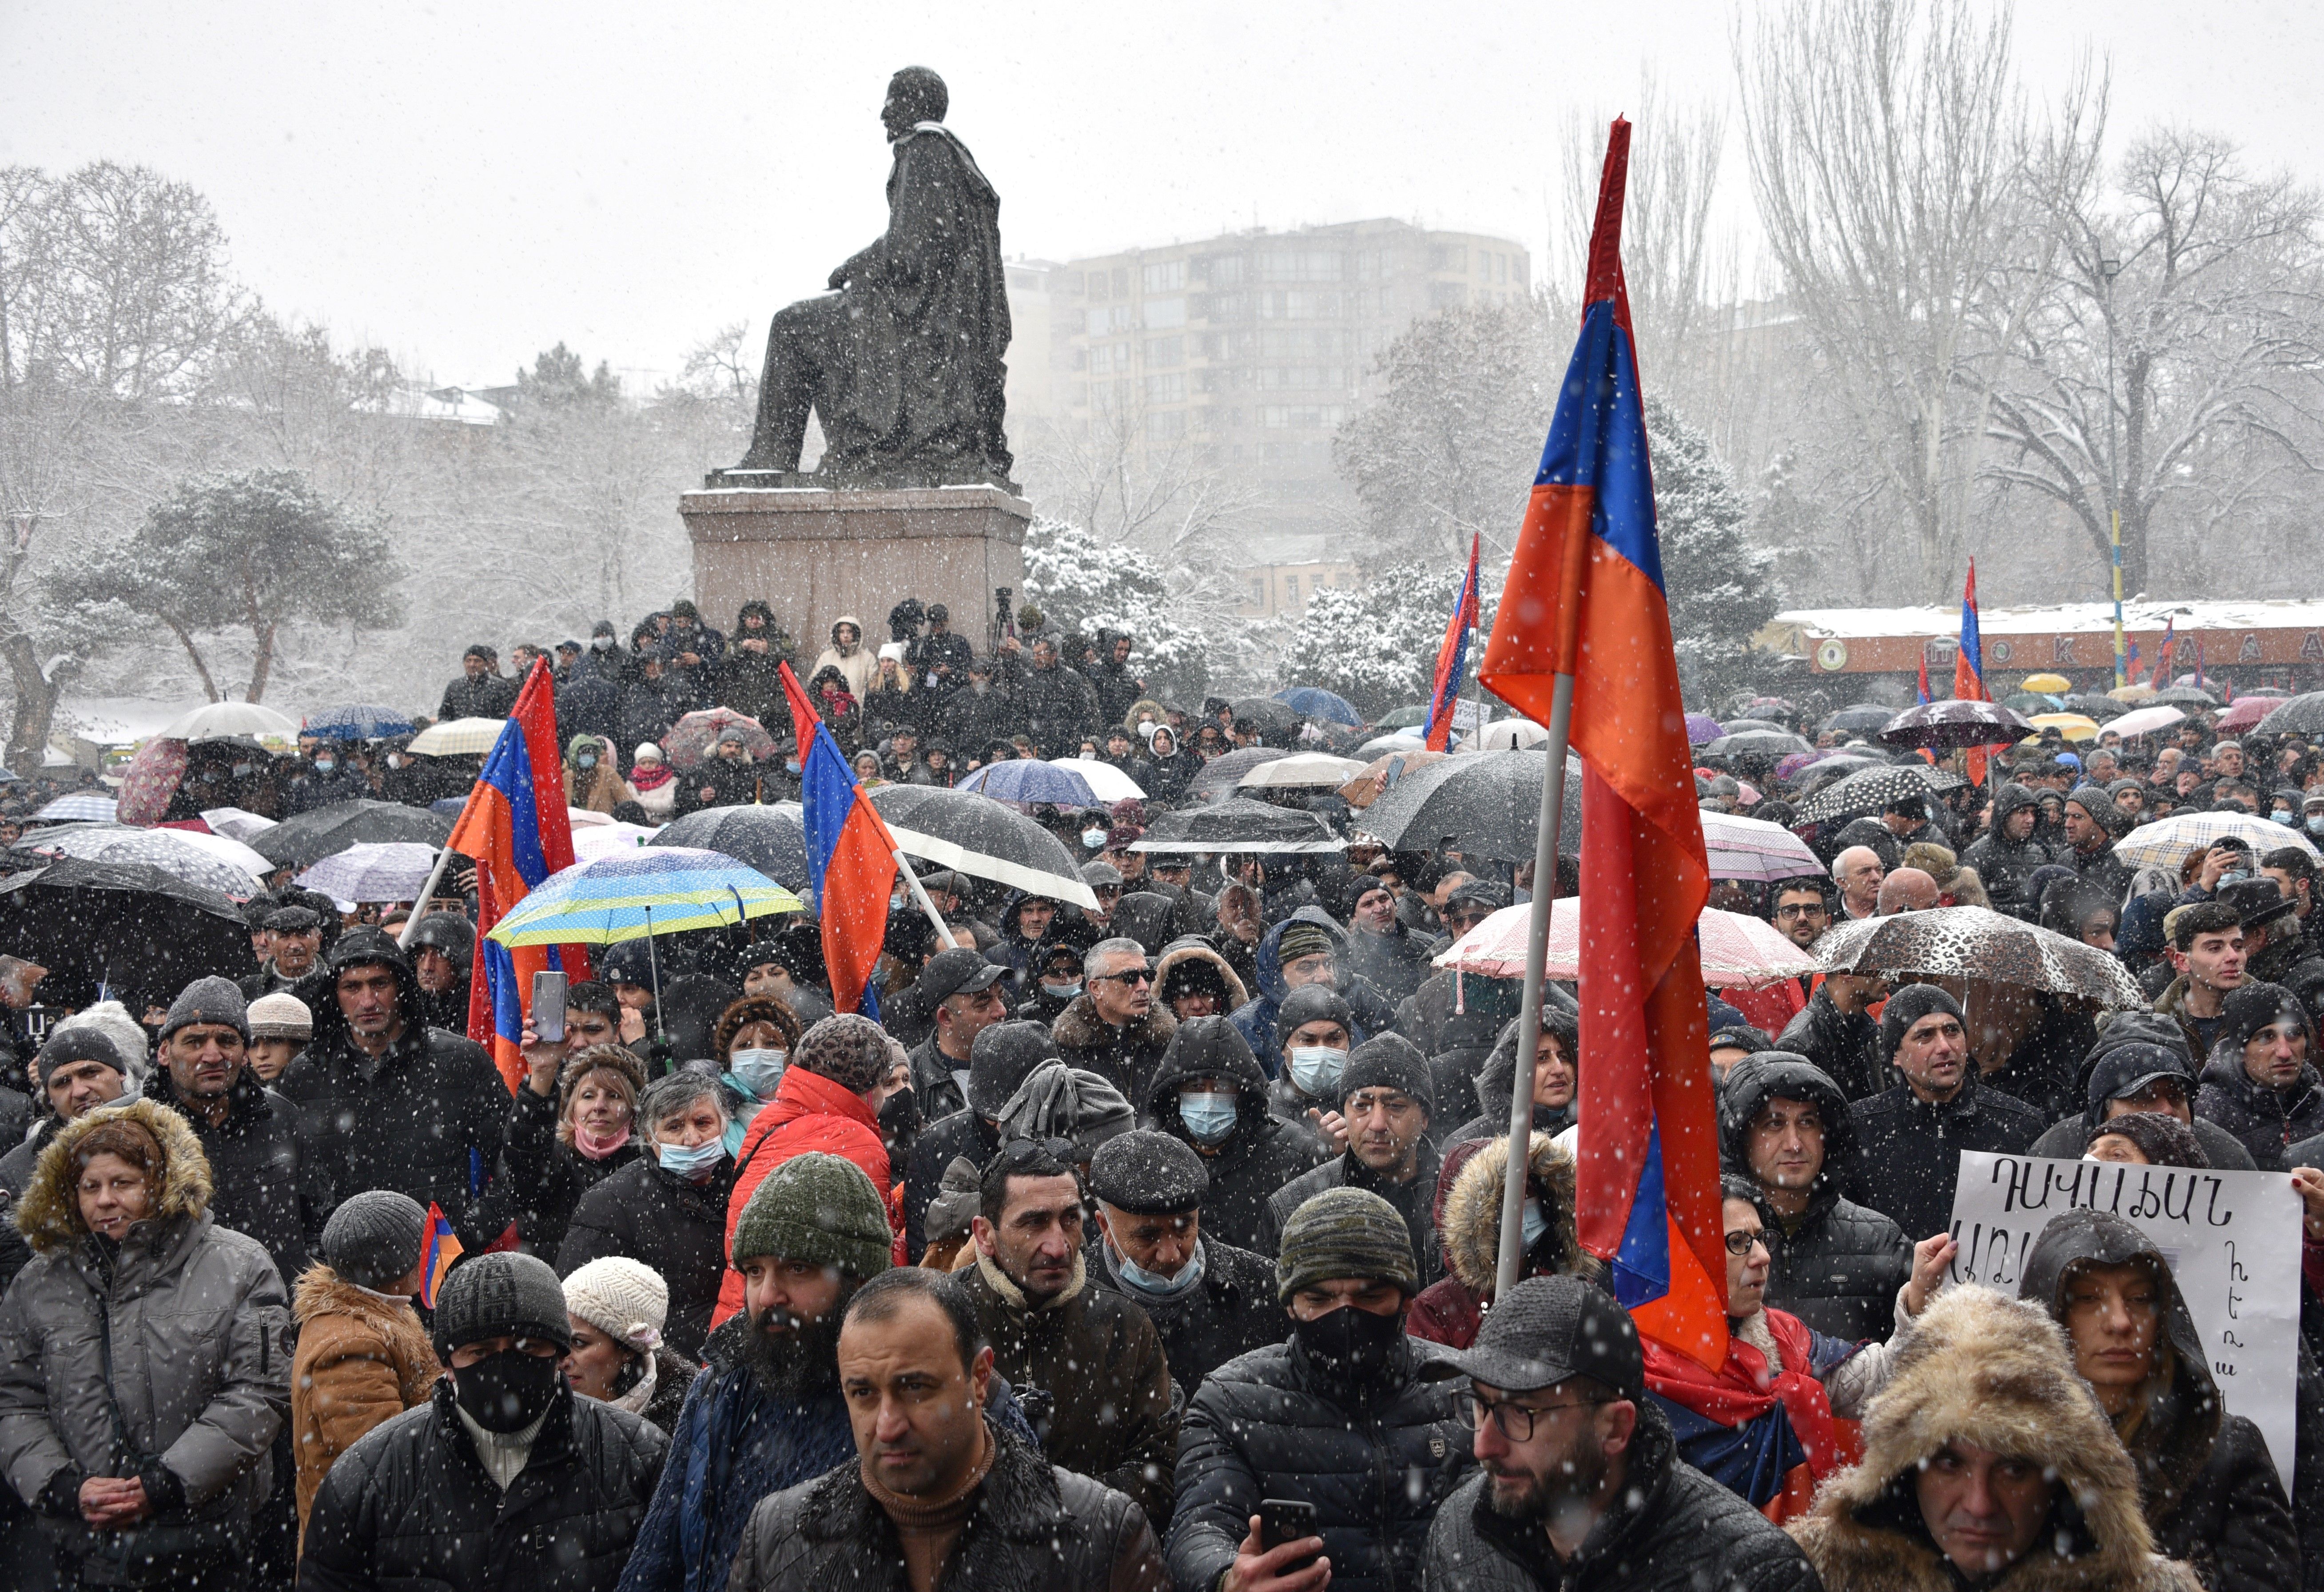 A defeated Armenia descends into turmoil | The Spectator